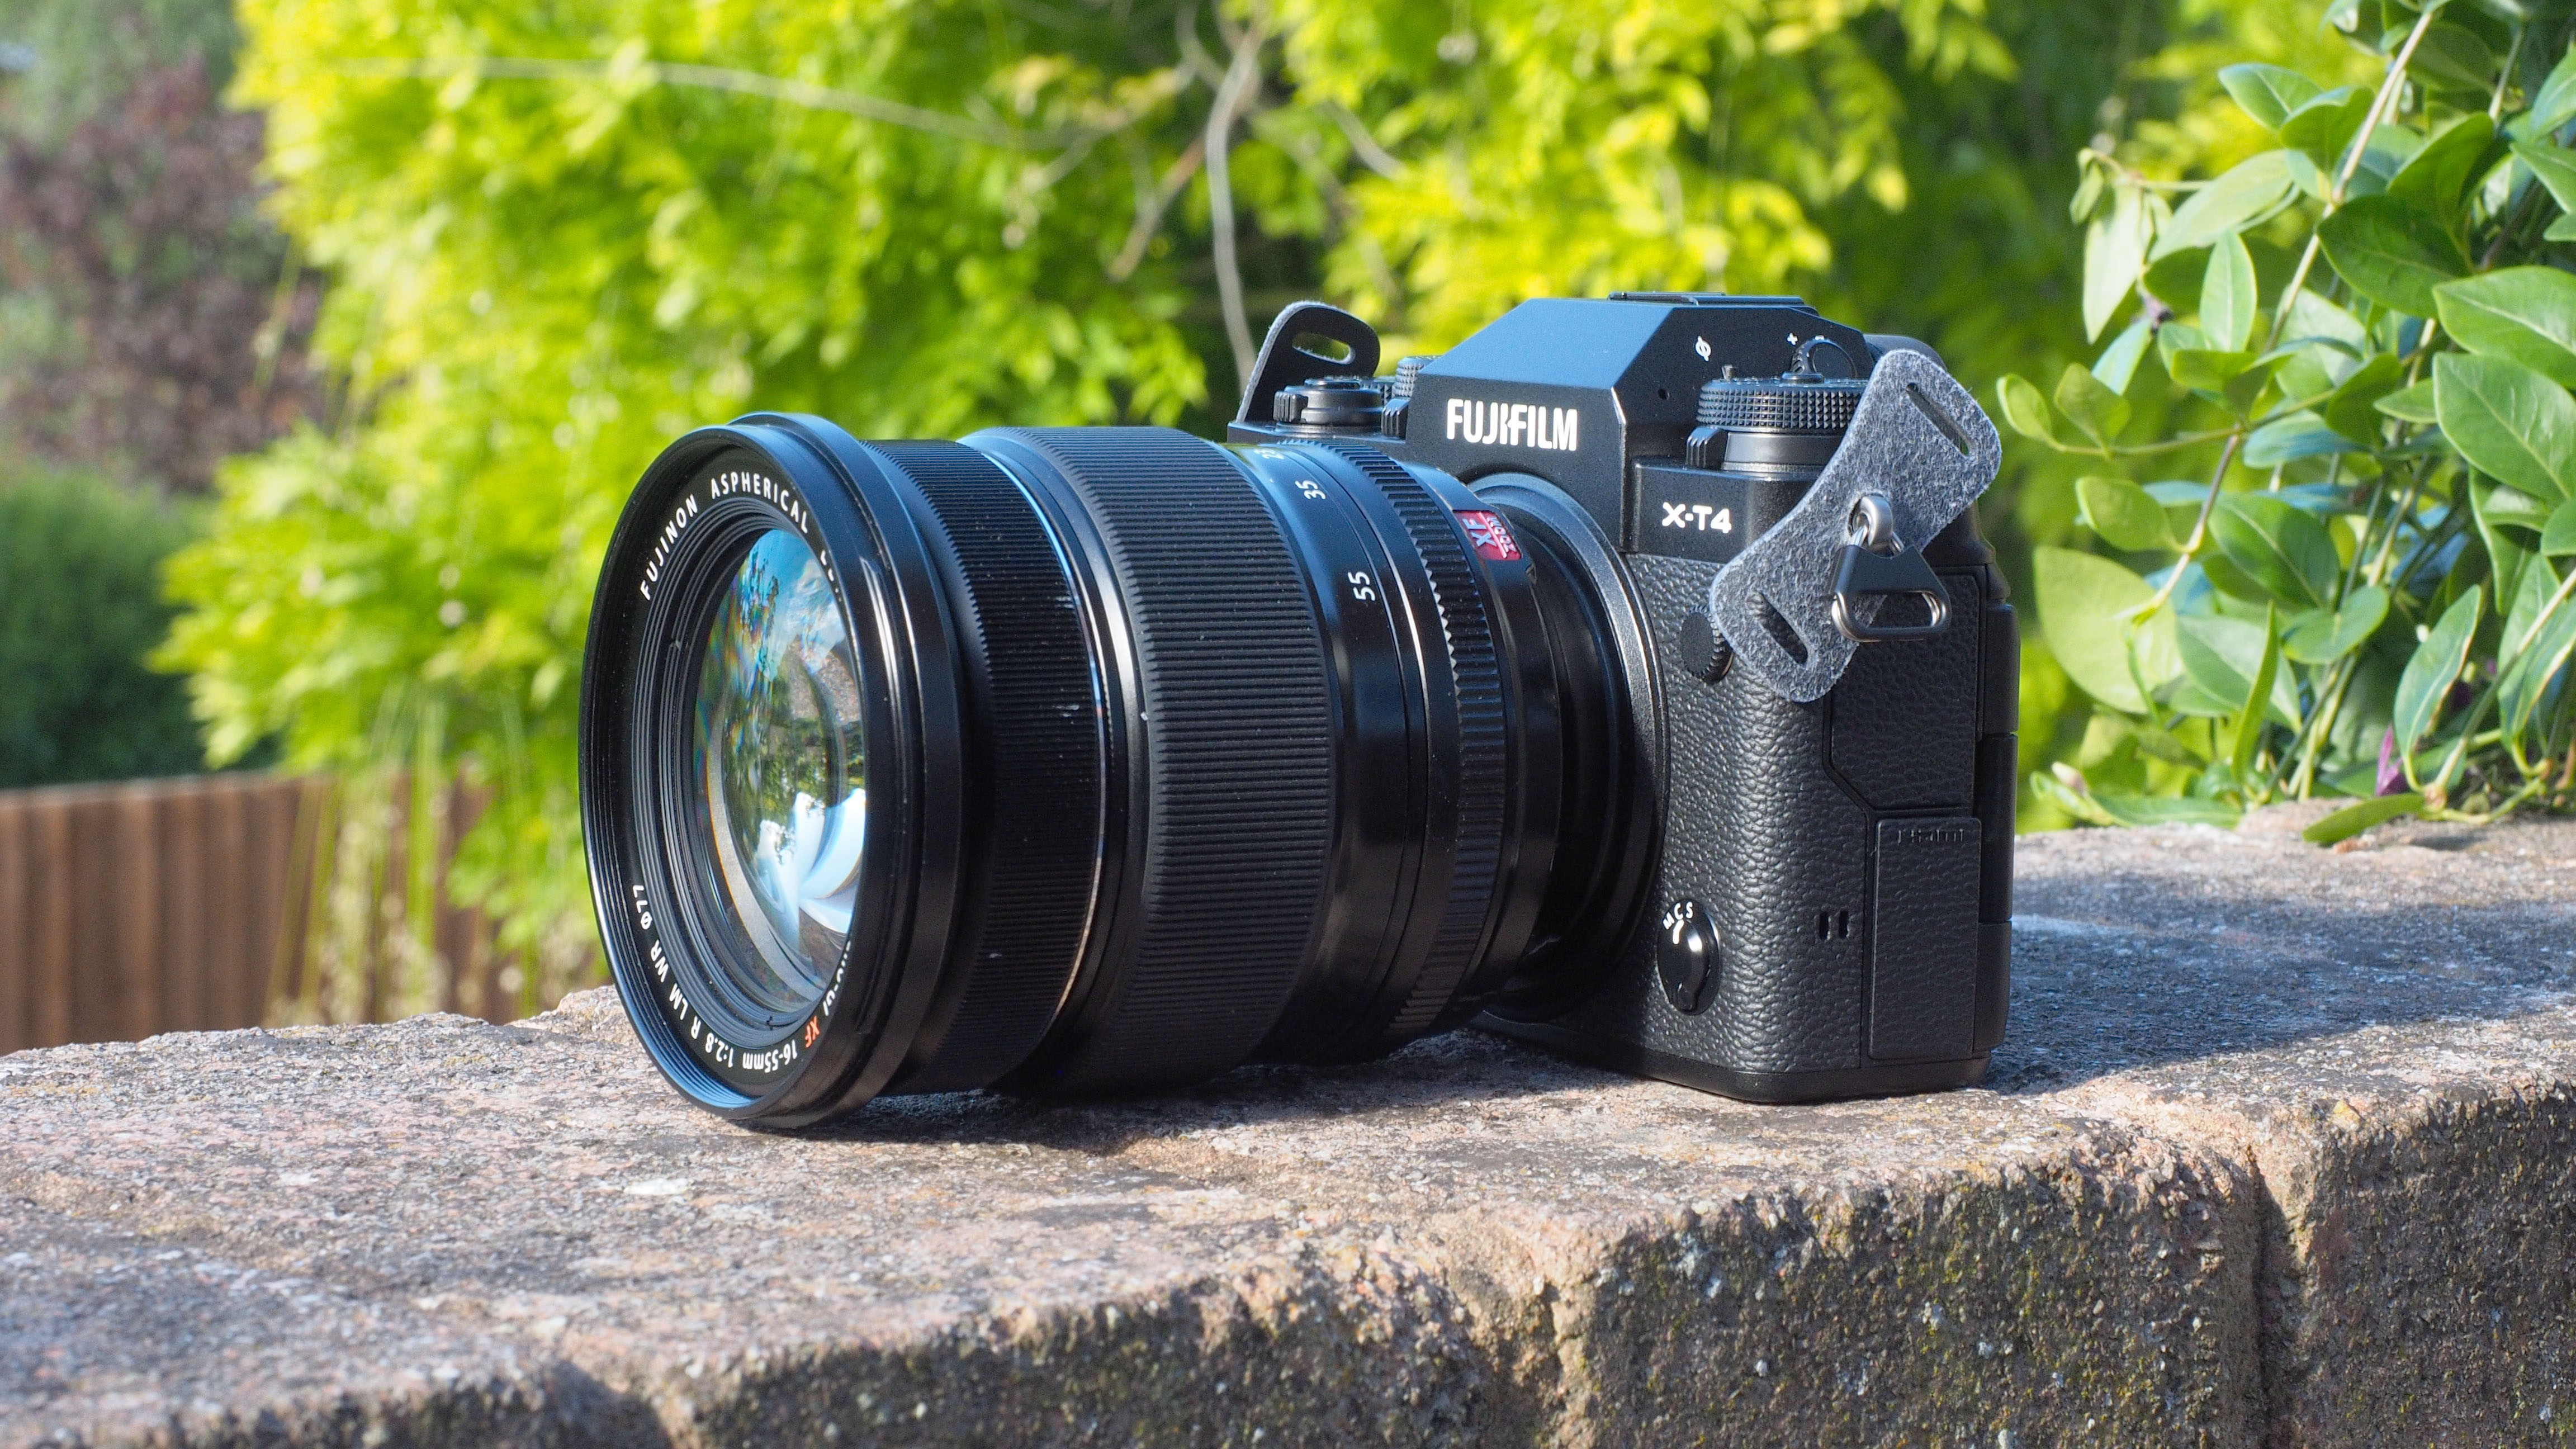 Best 4K camera: Fujifilm X-T4